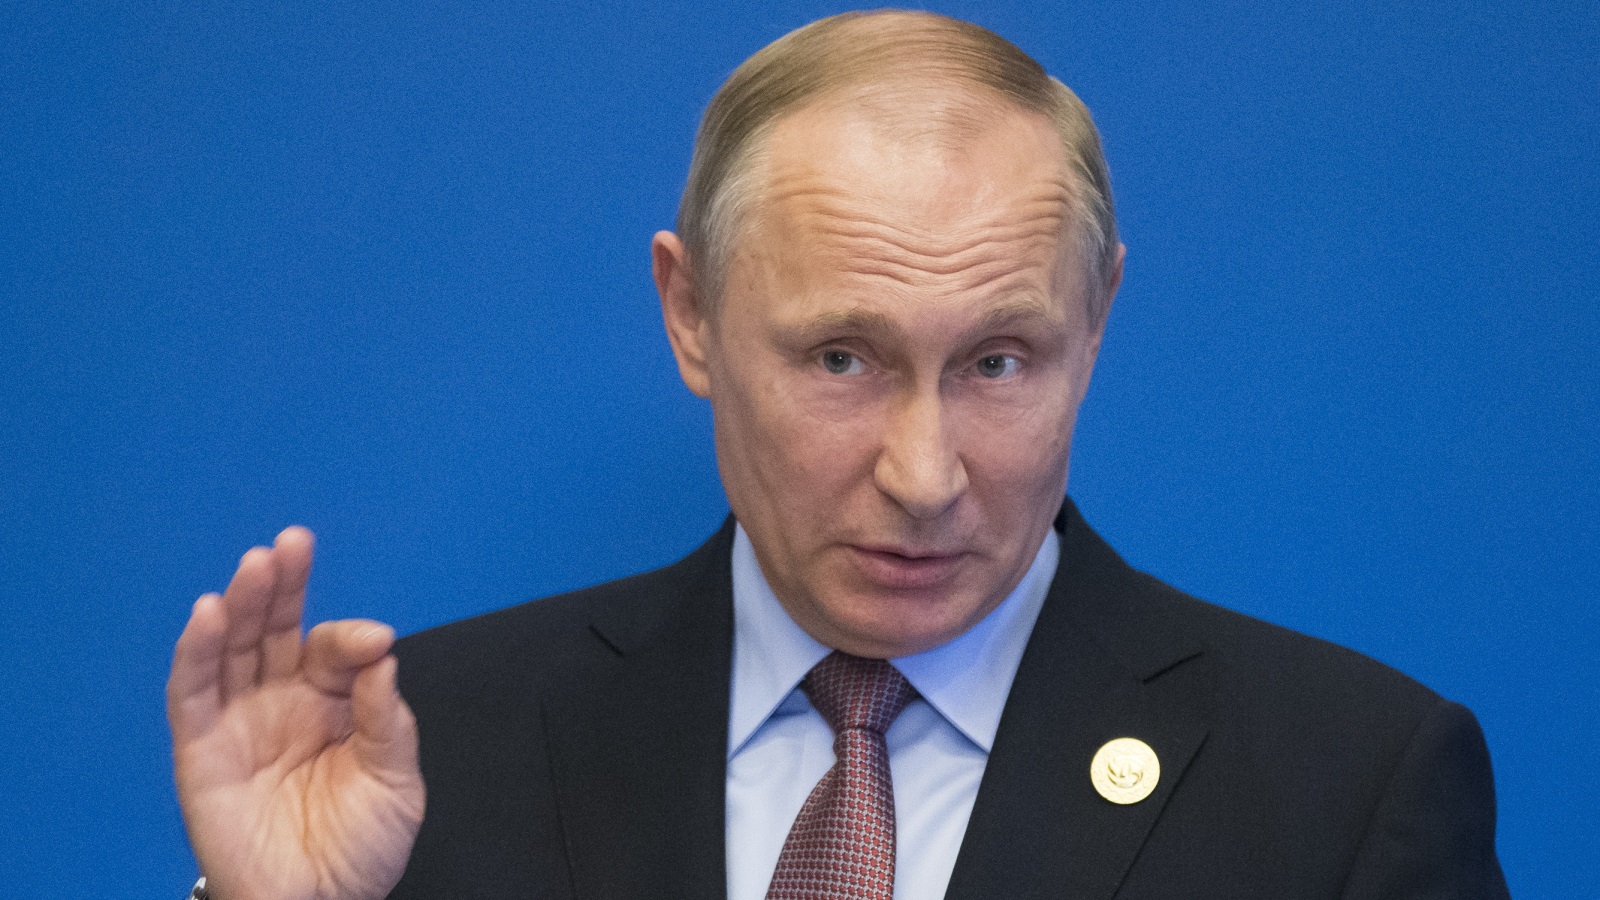 ‪فلاديمير بوتين أكد أن بلاده ليست لها أية علاقة بفيروس 